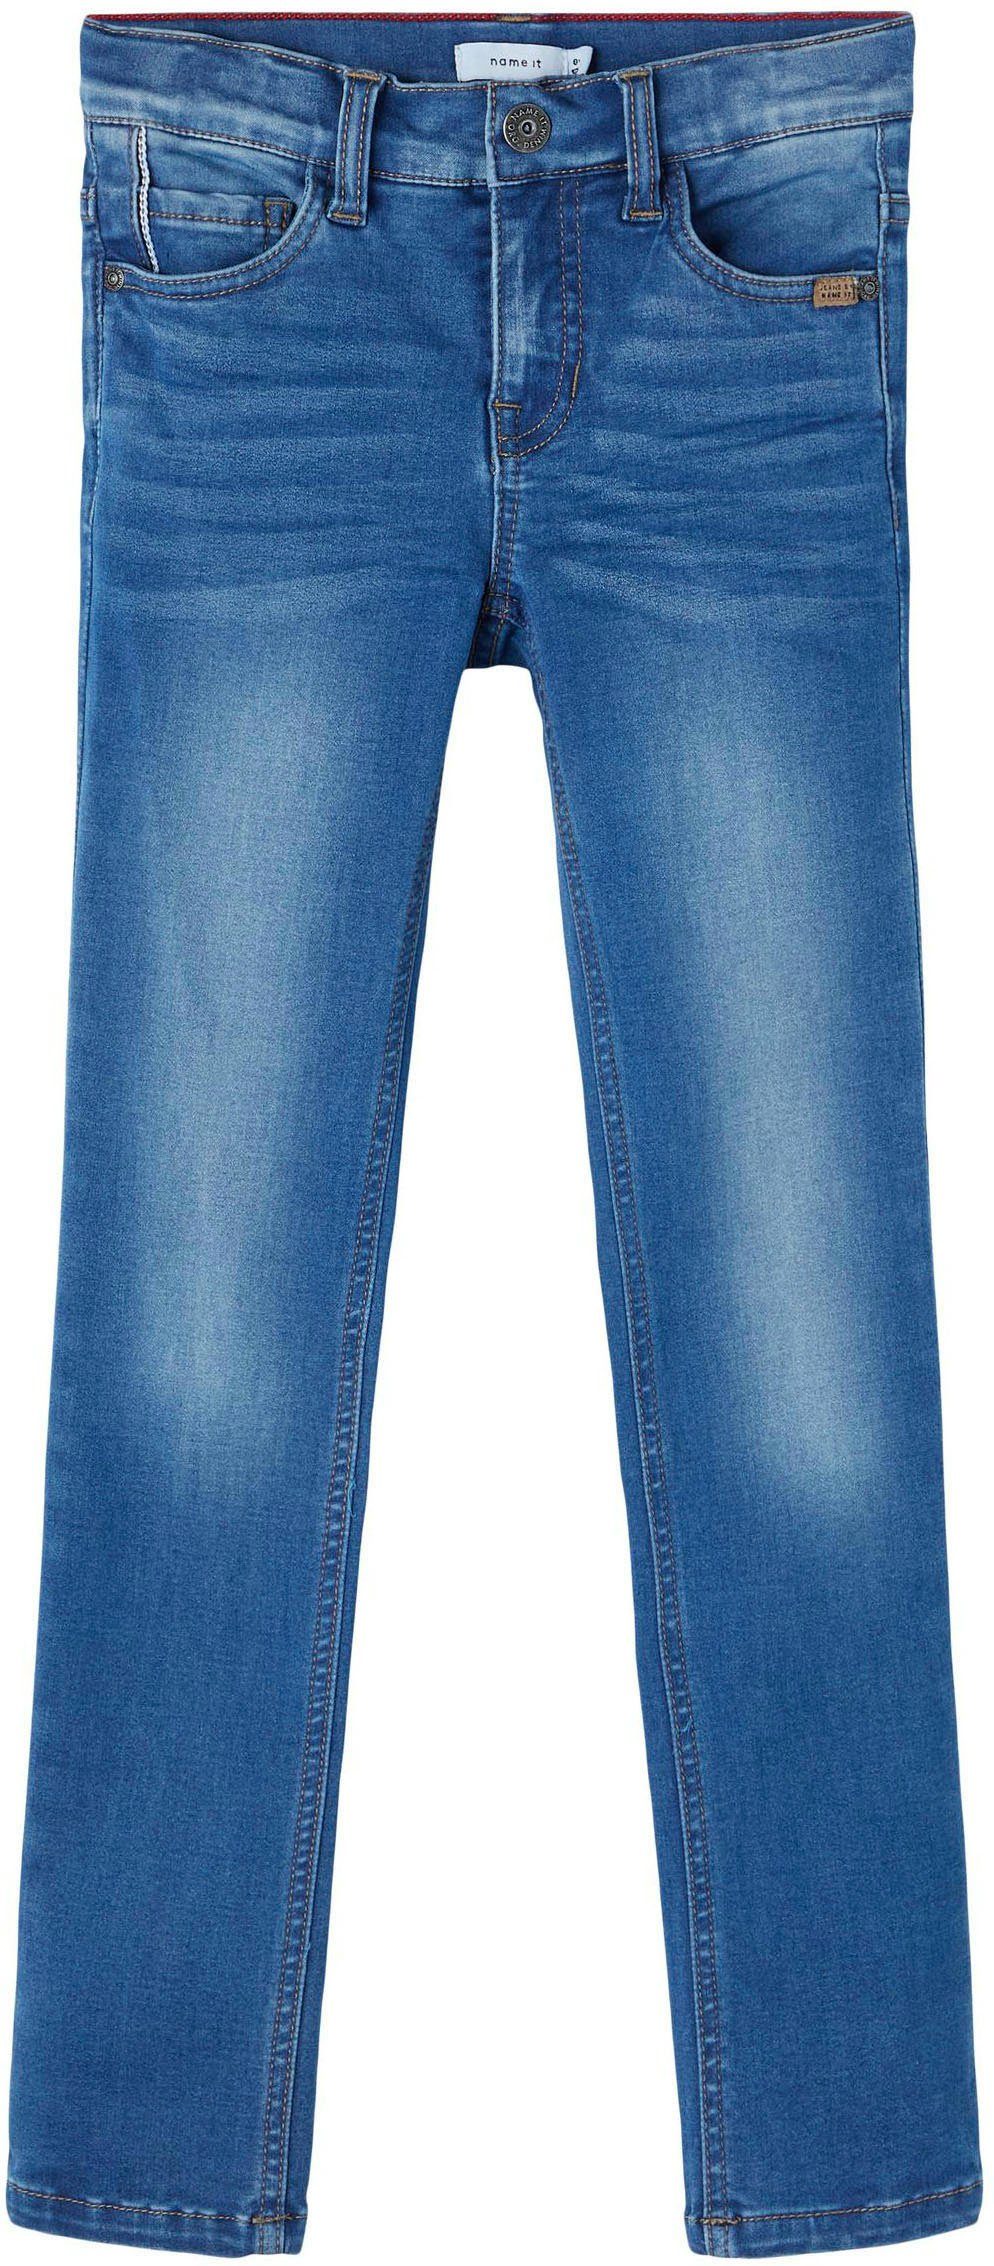 Stretch-Jeans Name Blau It